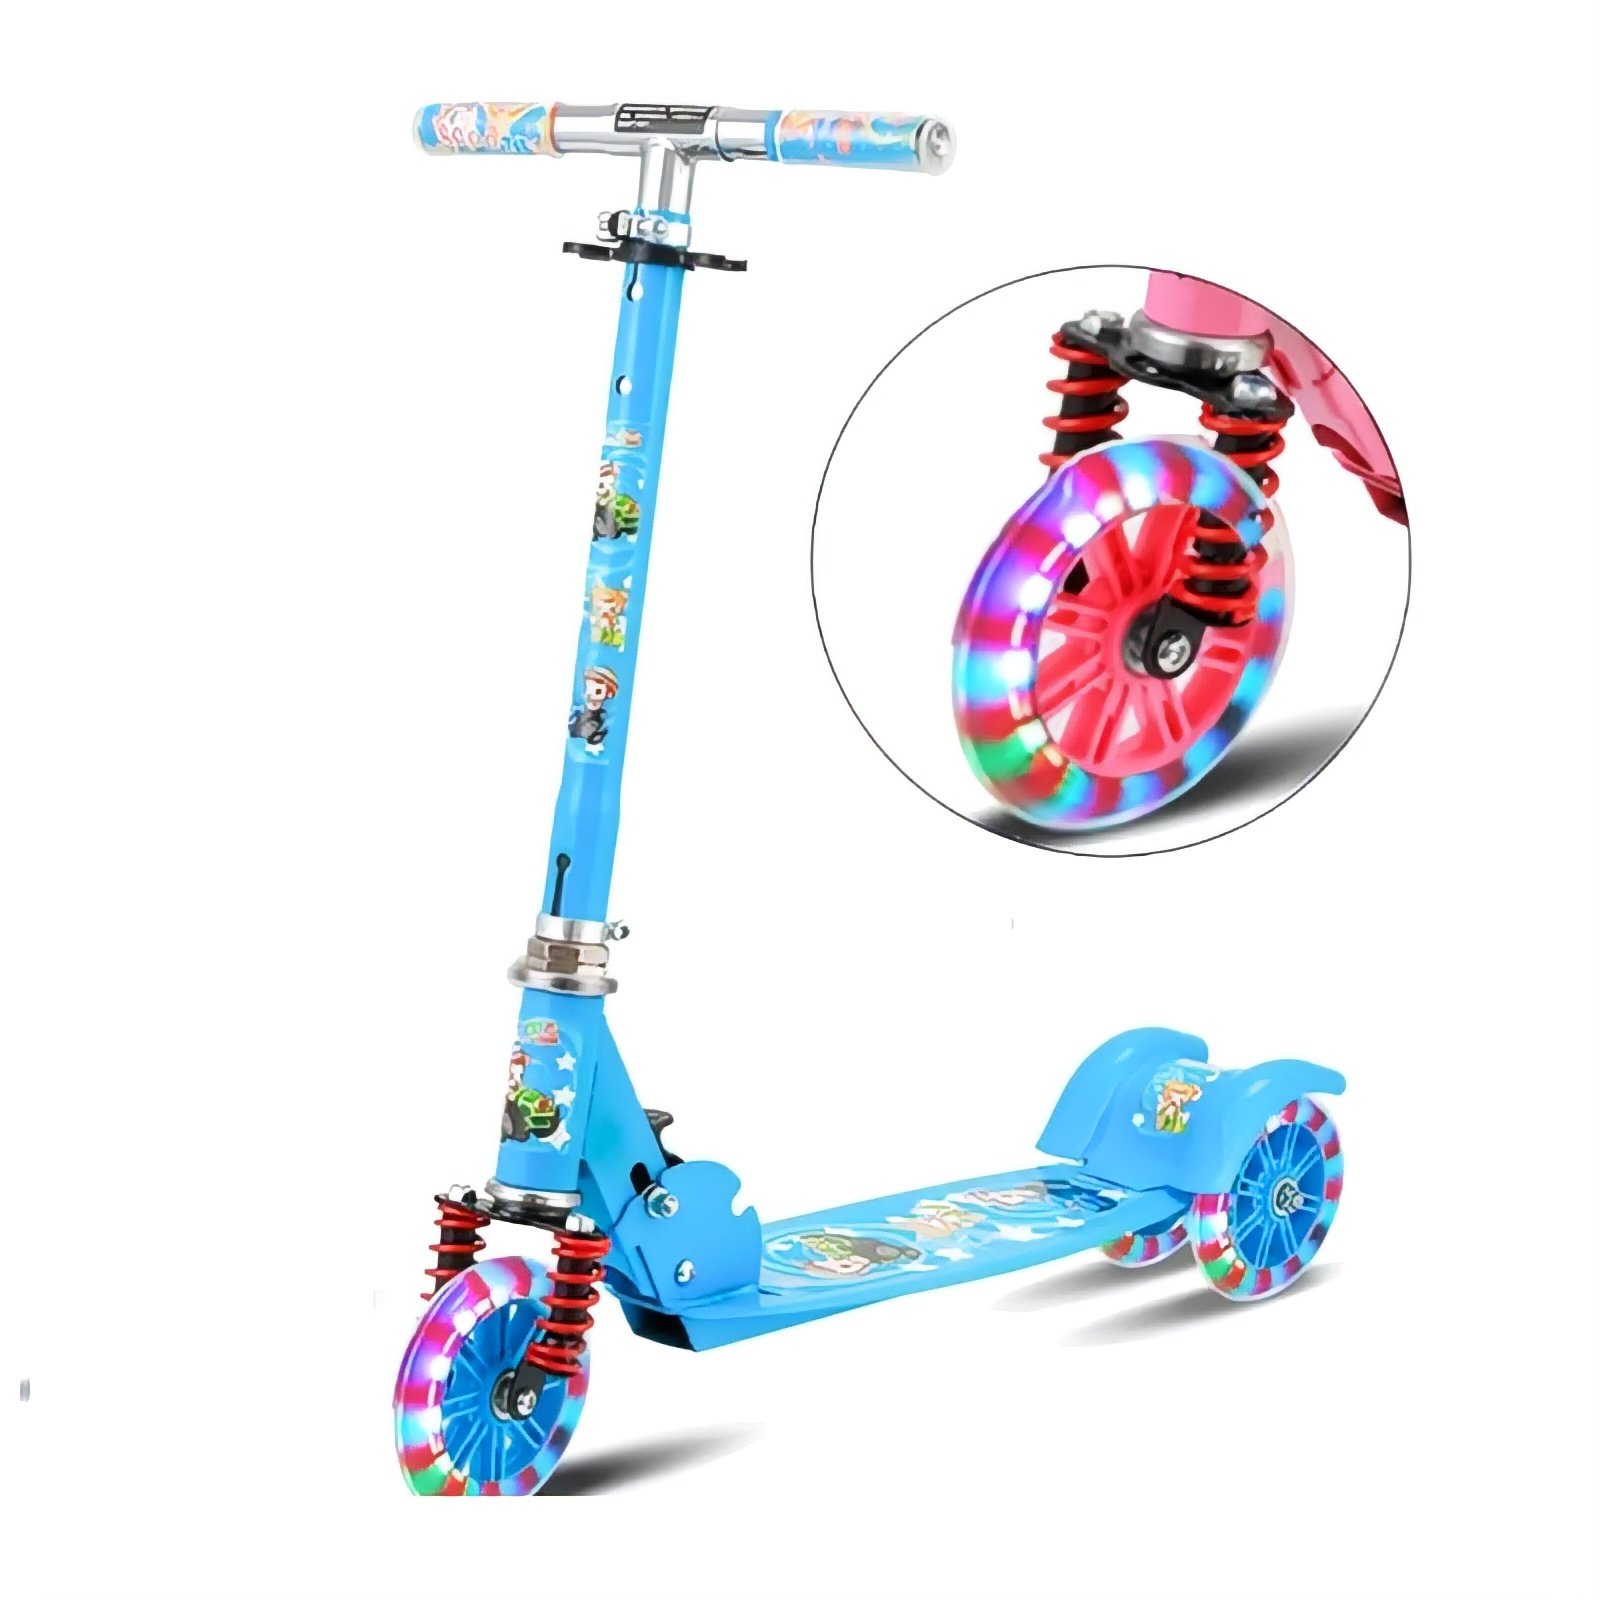 Monopatin scooter para niña edicion especial con luces led modelo